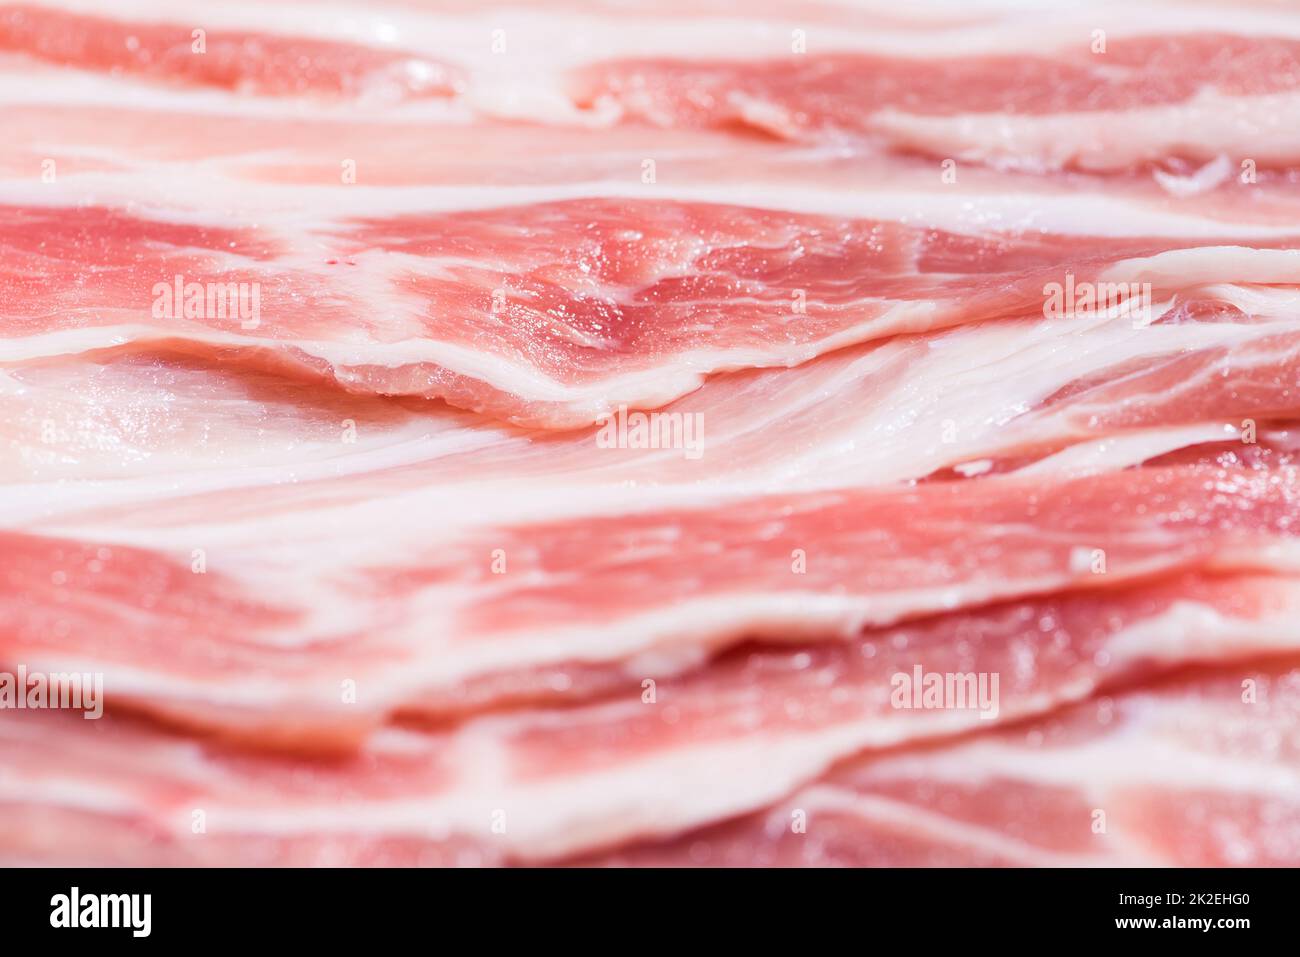 Confezione di primo piano fette fresche di pancetta di maiale Foto Stock